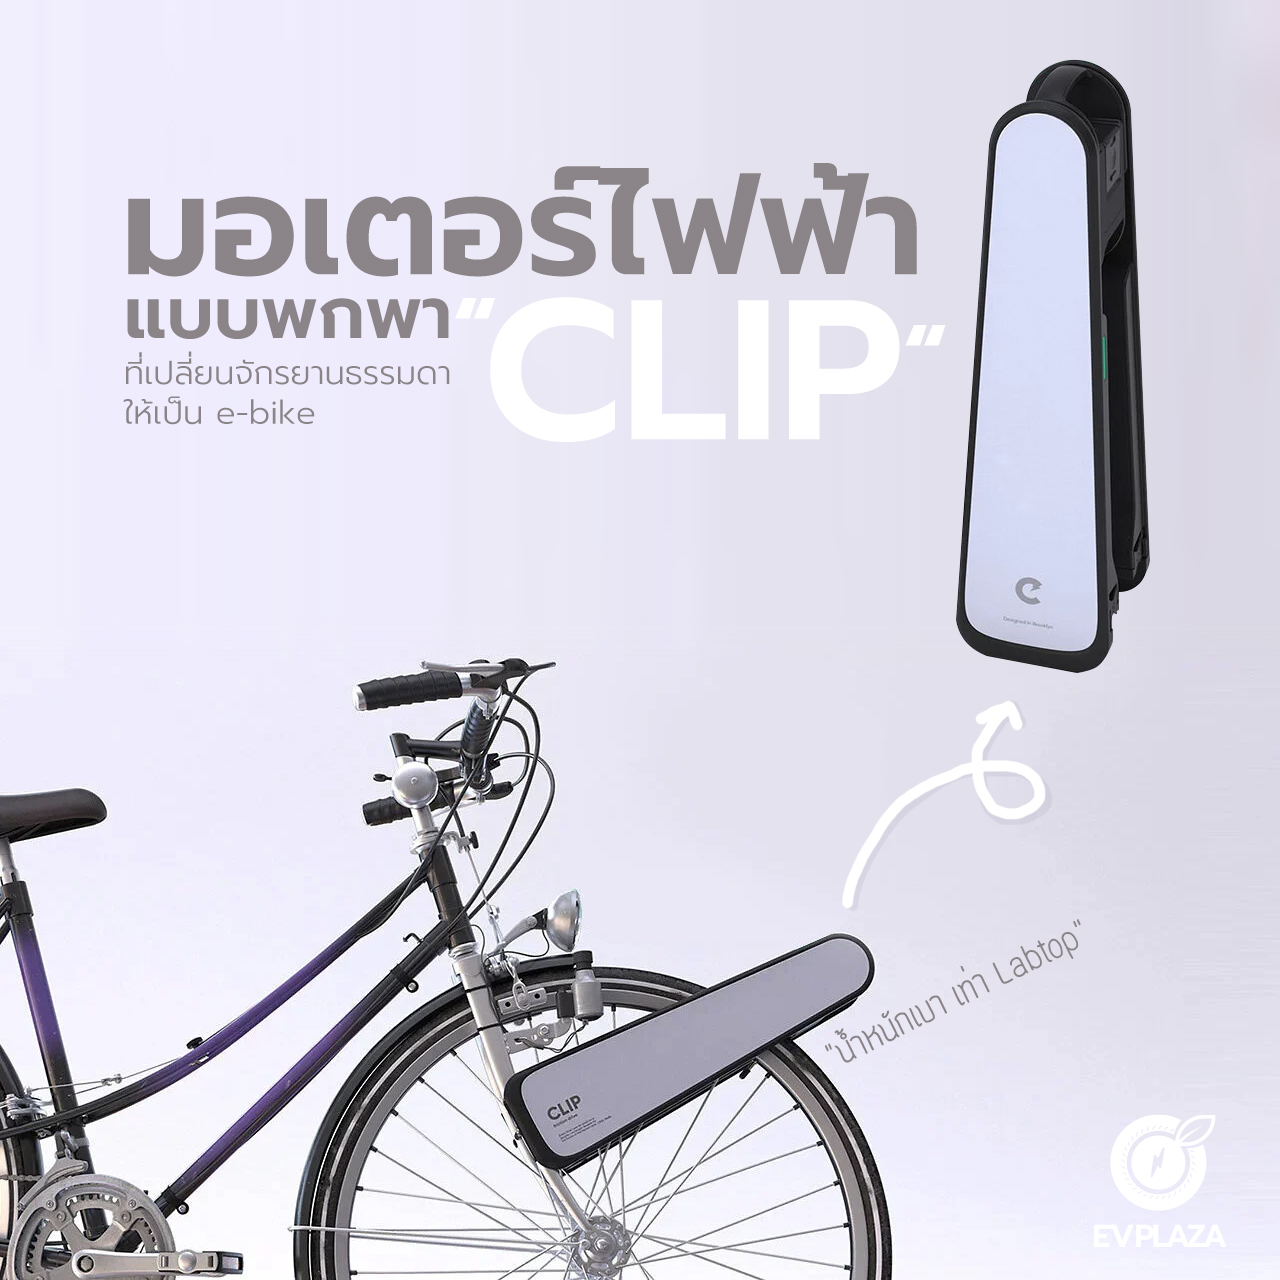 ย้อนกลับไปในปี 2019 บริษัทสตาร์ทอัพในบรู๊คลินได้เปิดตัวอุปกรณ์ที่สามารถต่อเข้ากับจักรยานทุกคันได้อย่างง่ายดายโดยสามารถแปลงเป็น e-bike ได้ทันที ซึ่งอุปกรณ์นั้นมีชื่อเรียกว่า CLIP เป็นอีกหนึ่งทางเลือกสำหรับการเดินทางที่ช่วยลดมลพิษ